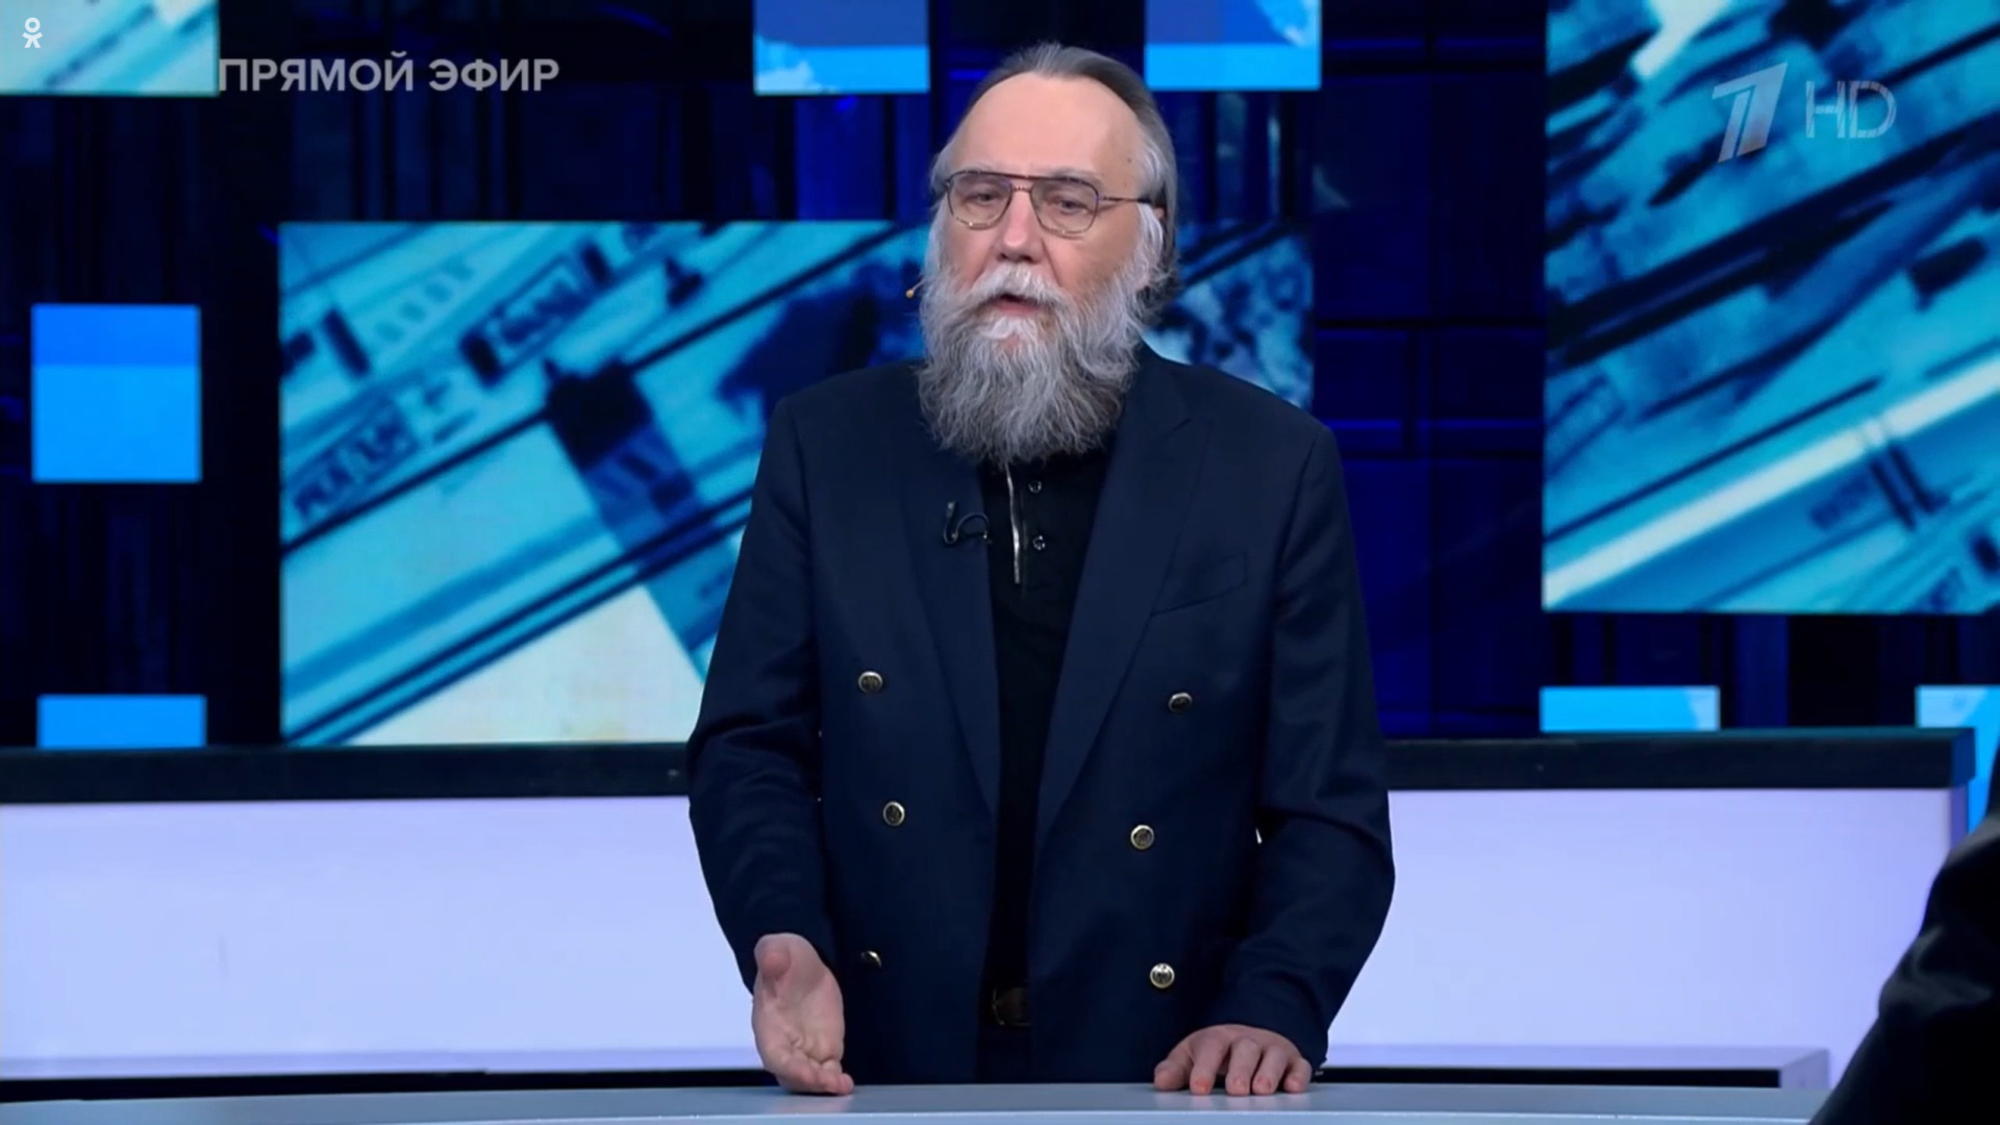 Il filosofo Aleksandr Dugin sulla televisione di Stato russa